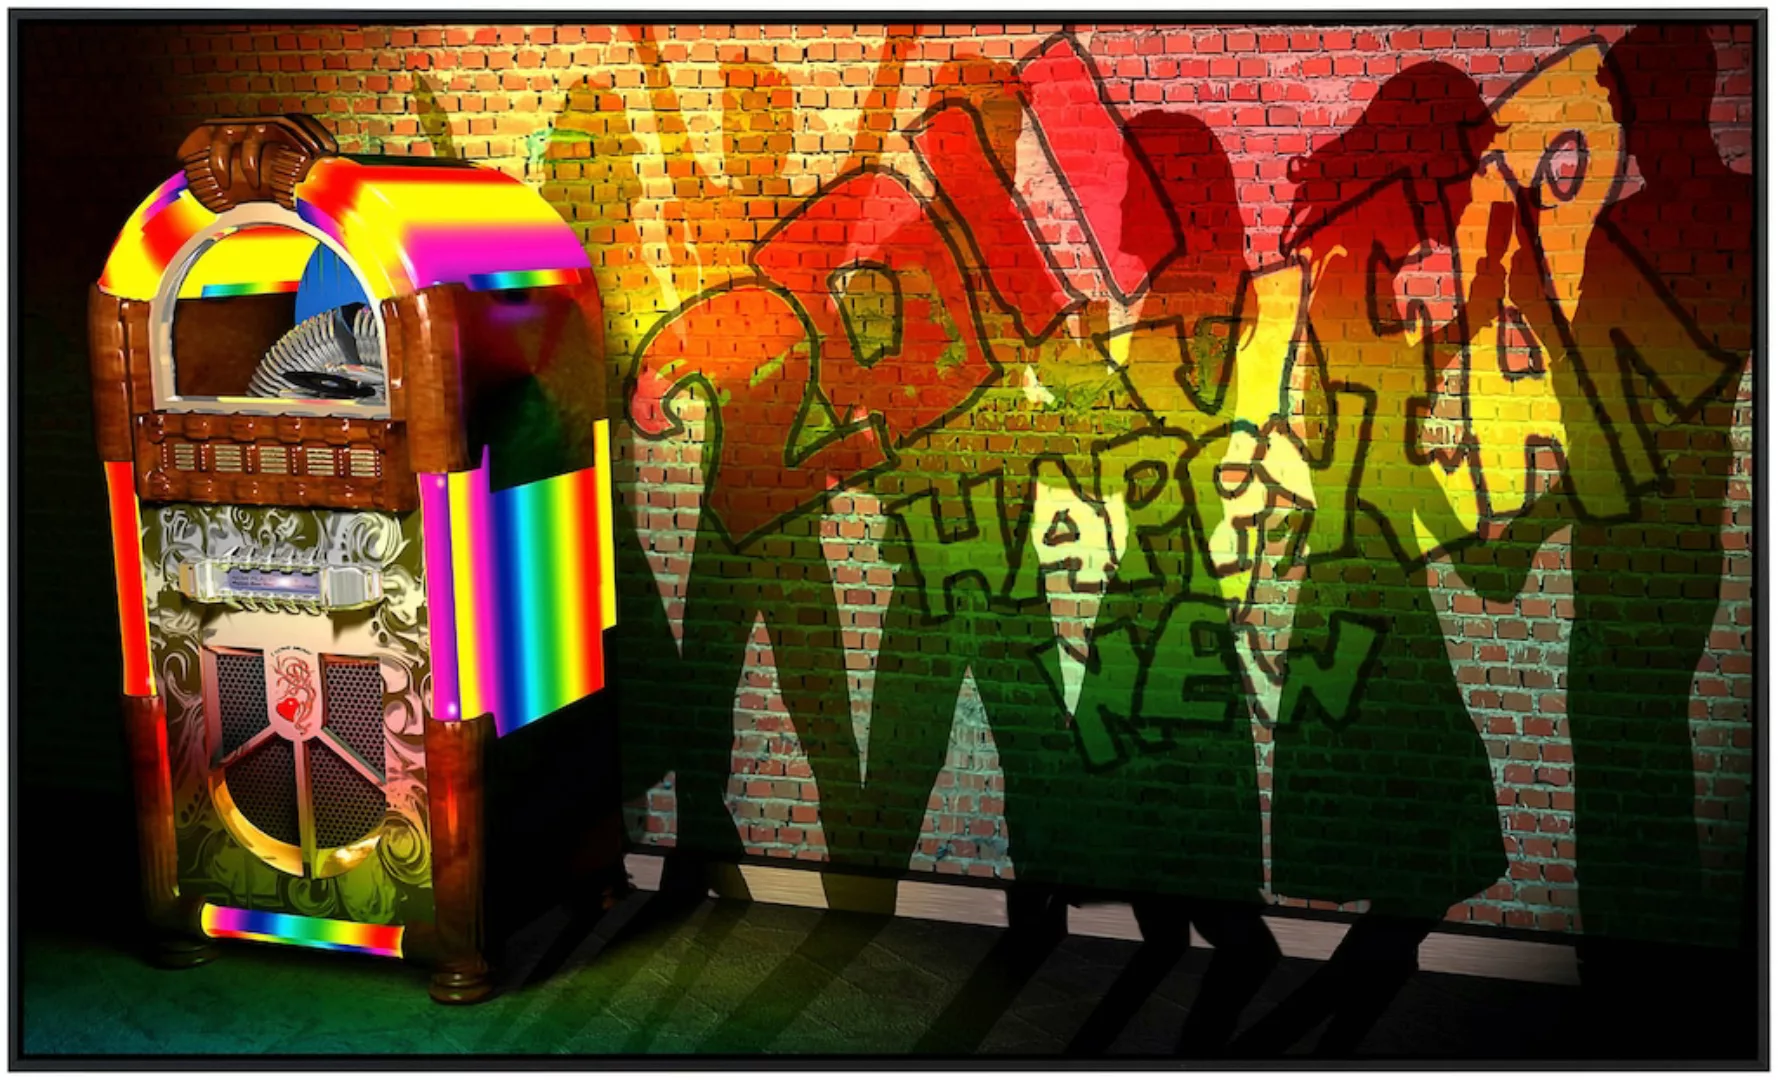 Papermoon Infrarotheizung »Jukebox mit Graffiti«, sehr angenehme Strahlungs günstig online kaufen